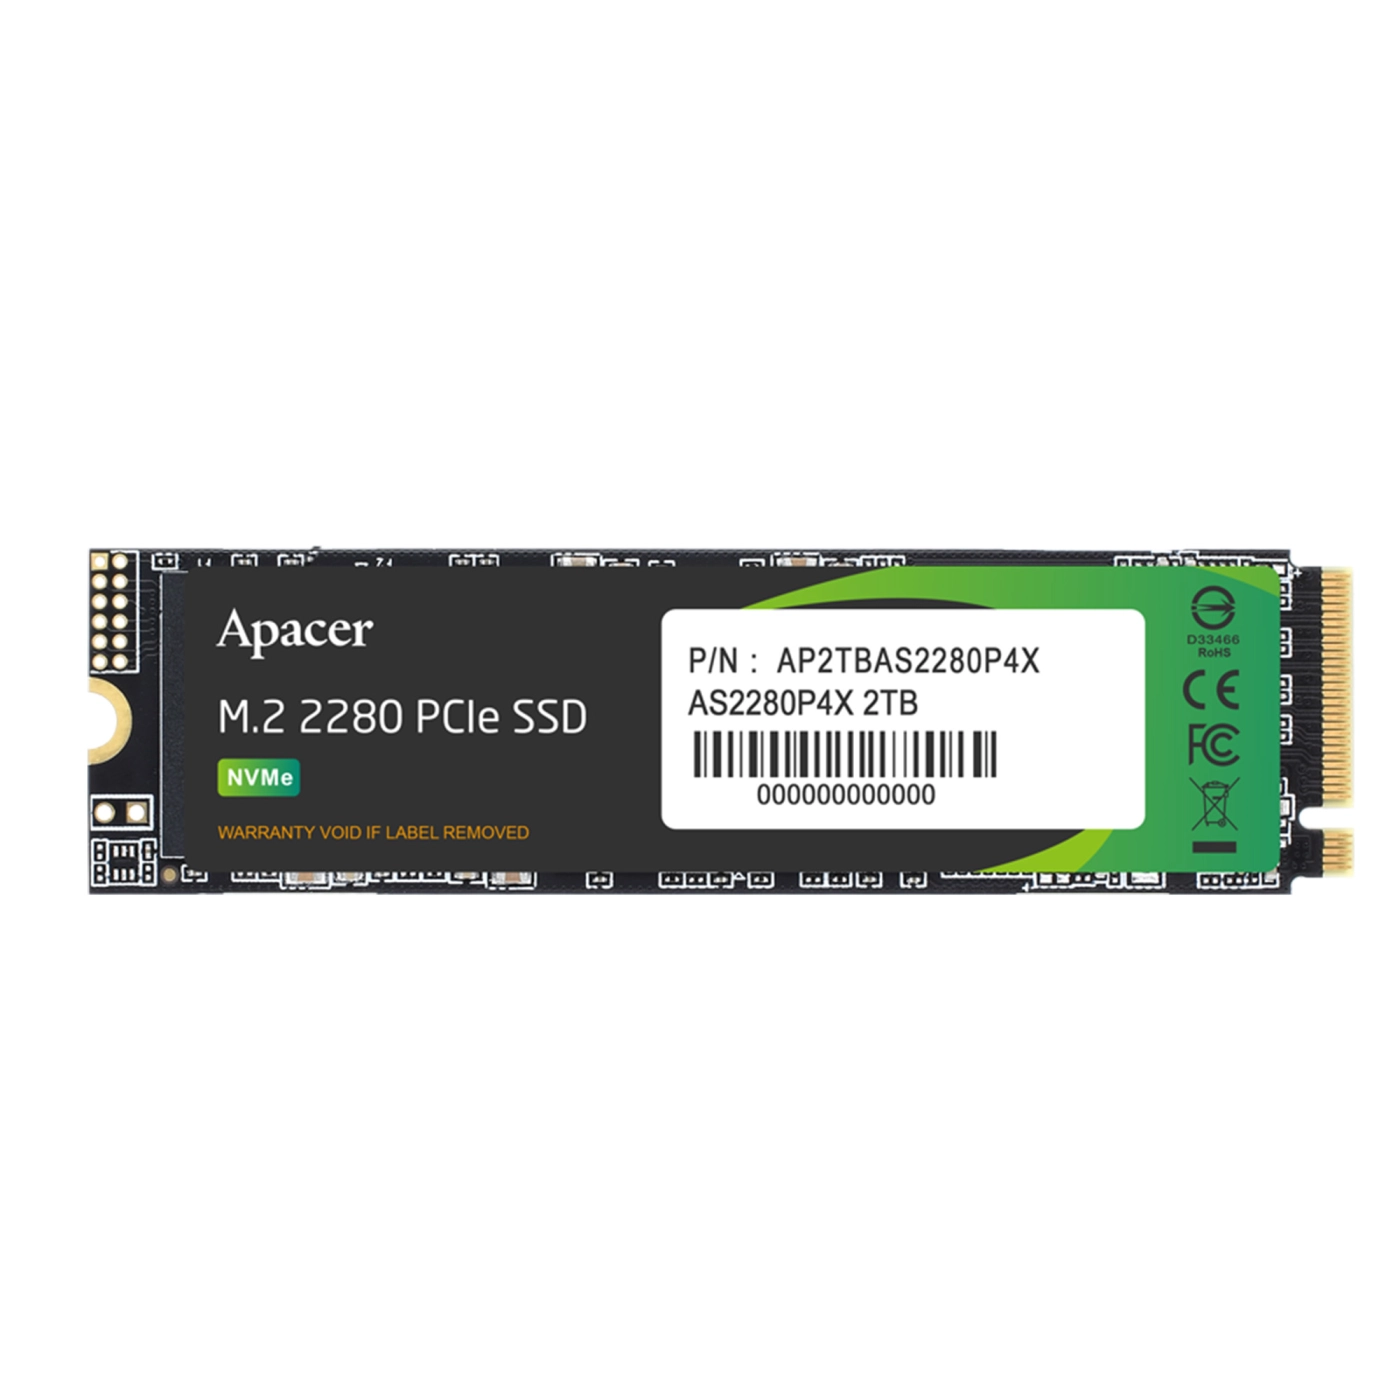 Купить SSD диск Apacer AS2280P4X 2TB M.2 2280 (AP2TBAS2280P4X-1) - фото 1